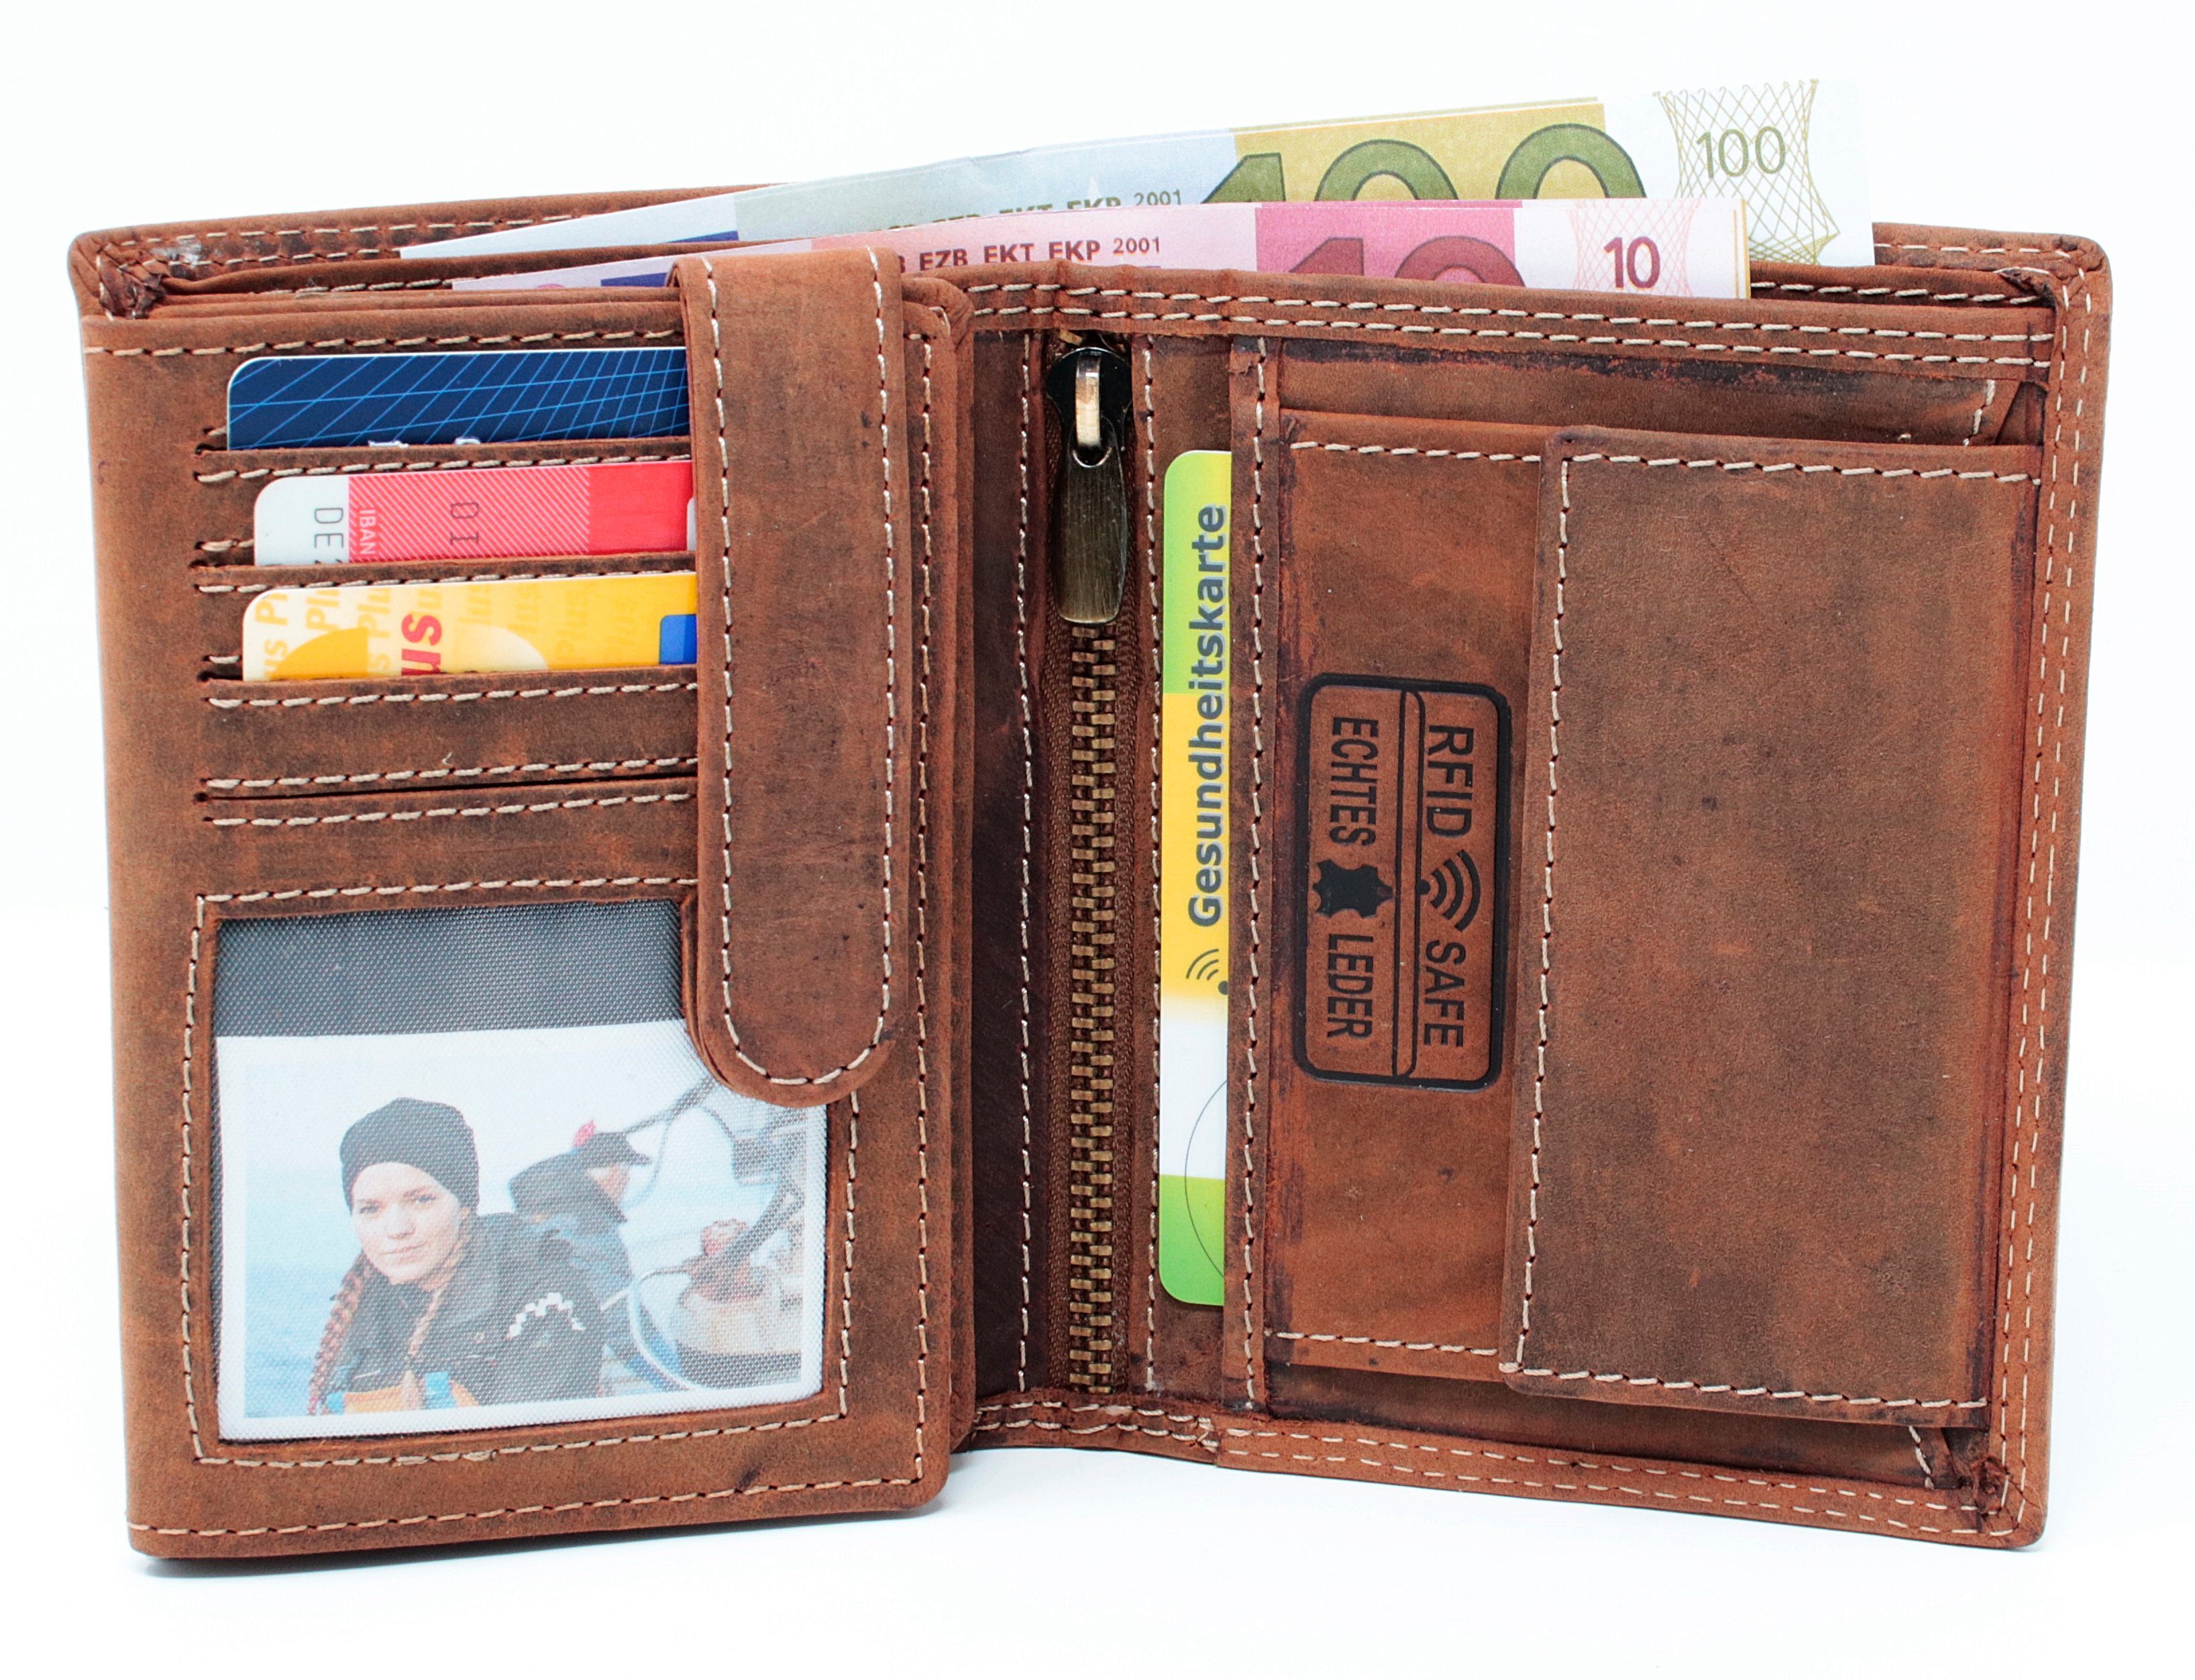 Geldbeutel RFID Börse Schutz Münzfach Brieftasche Geldbörse SHG Herren Leder Lederbörse RFID, Geldbörse mit Portemonnaie Männerbörse